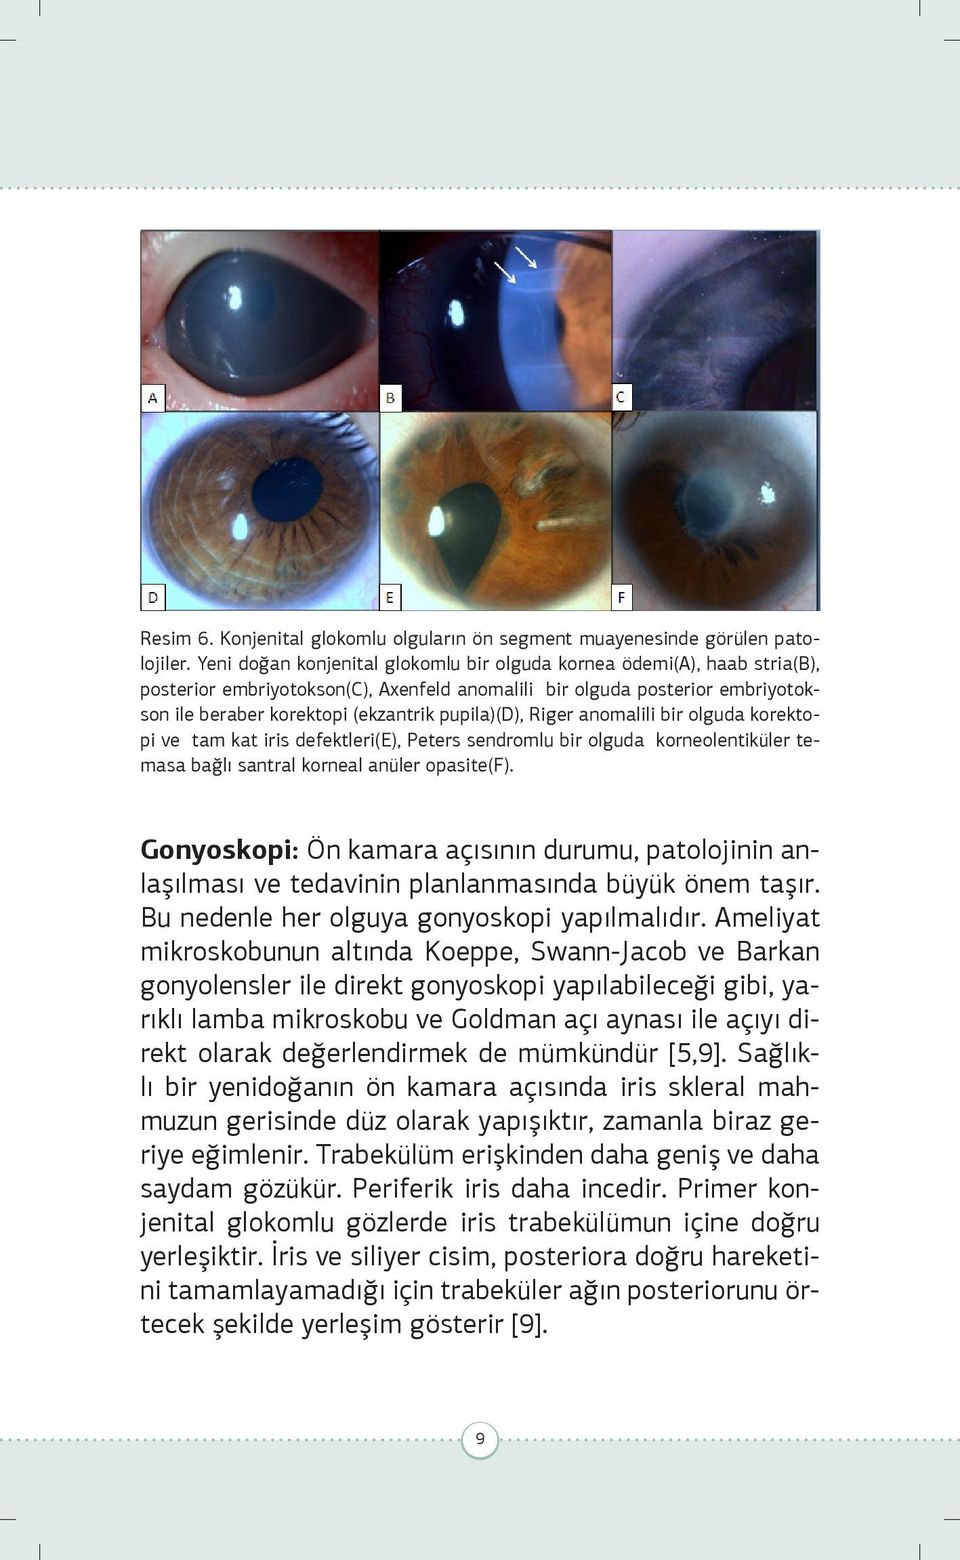 pupila)(d), Riger anomalili bir olguda korektopi ve tam kat iris defektleri(e), Peters sendromlu bir olguda korneolentiküler temasa bağlı santral korneal anüler opasite(f).